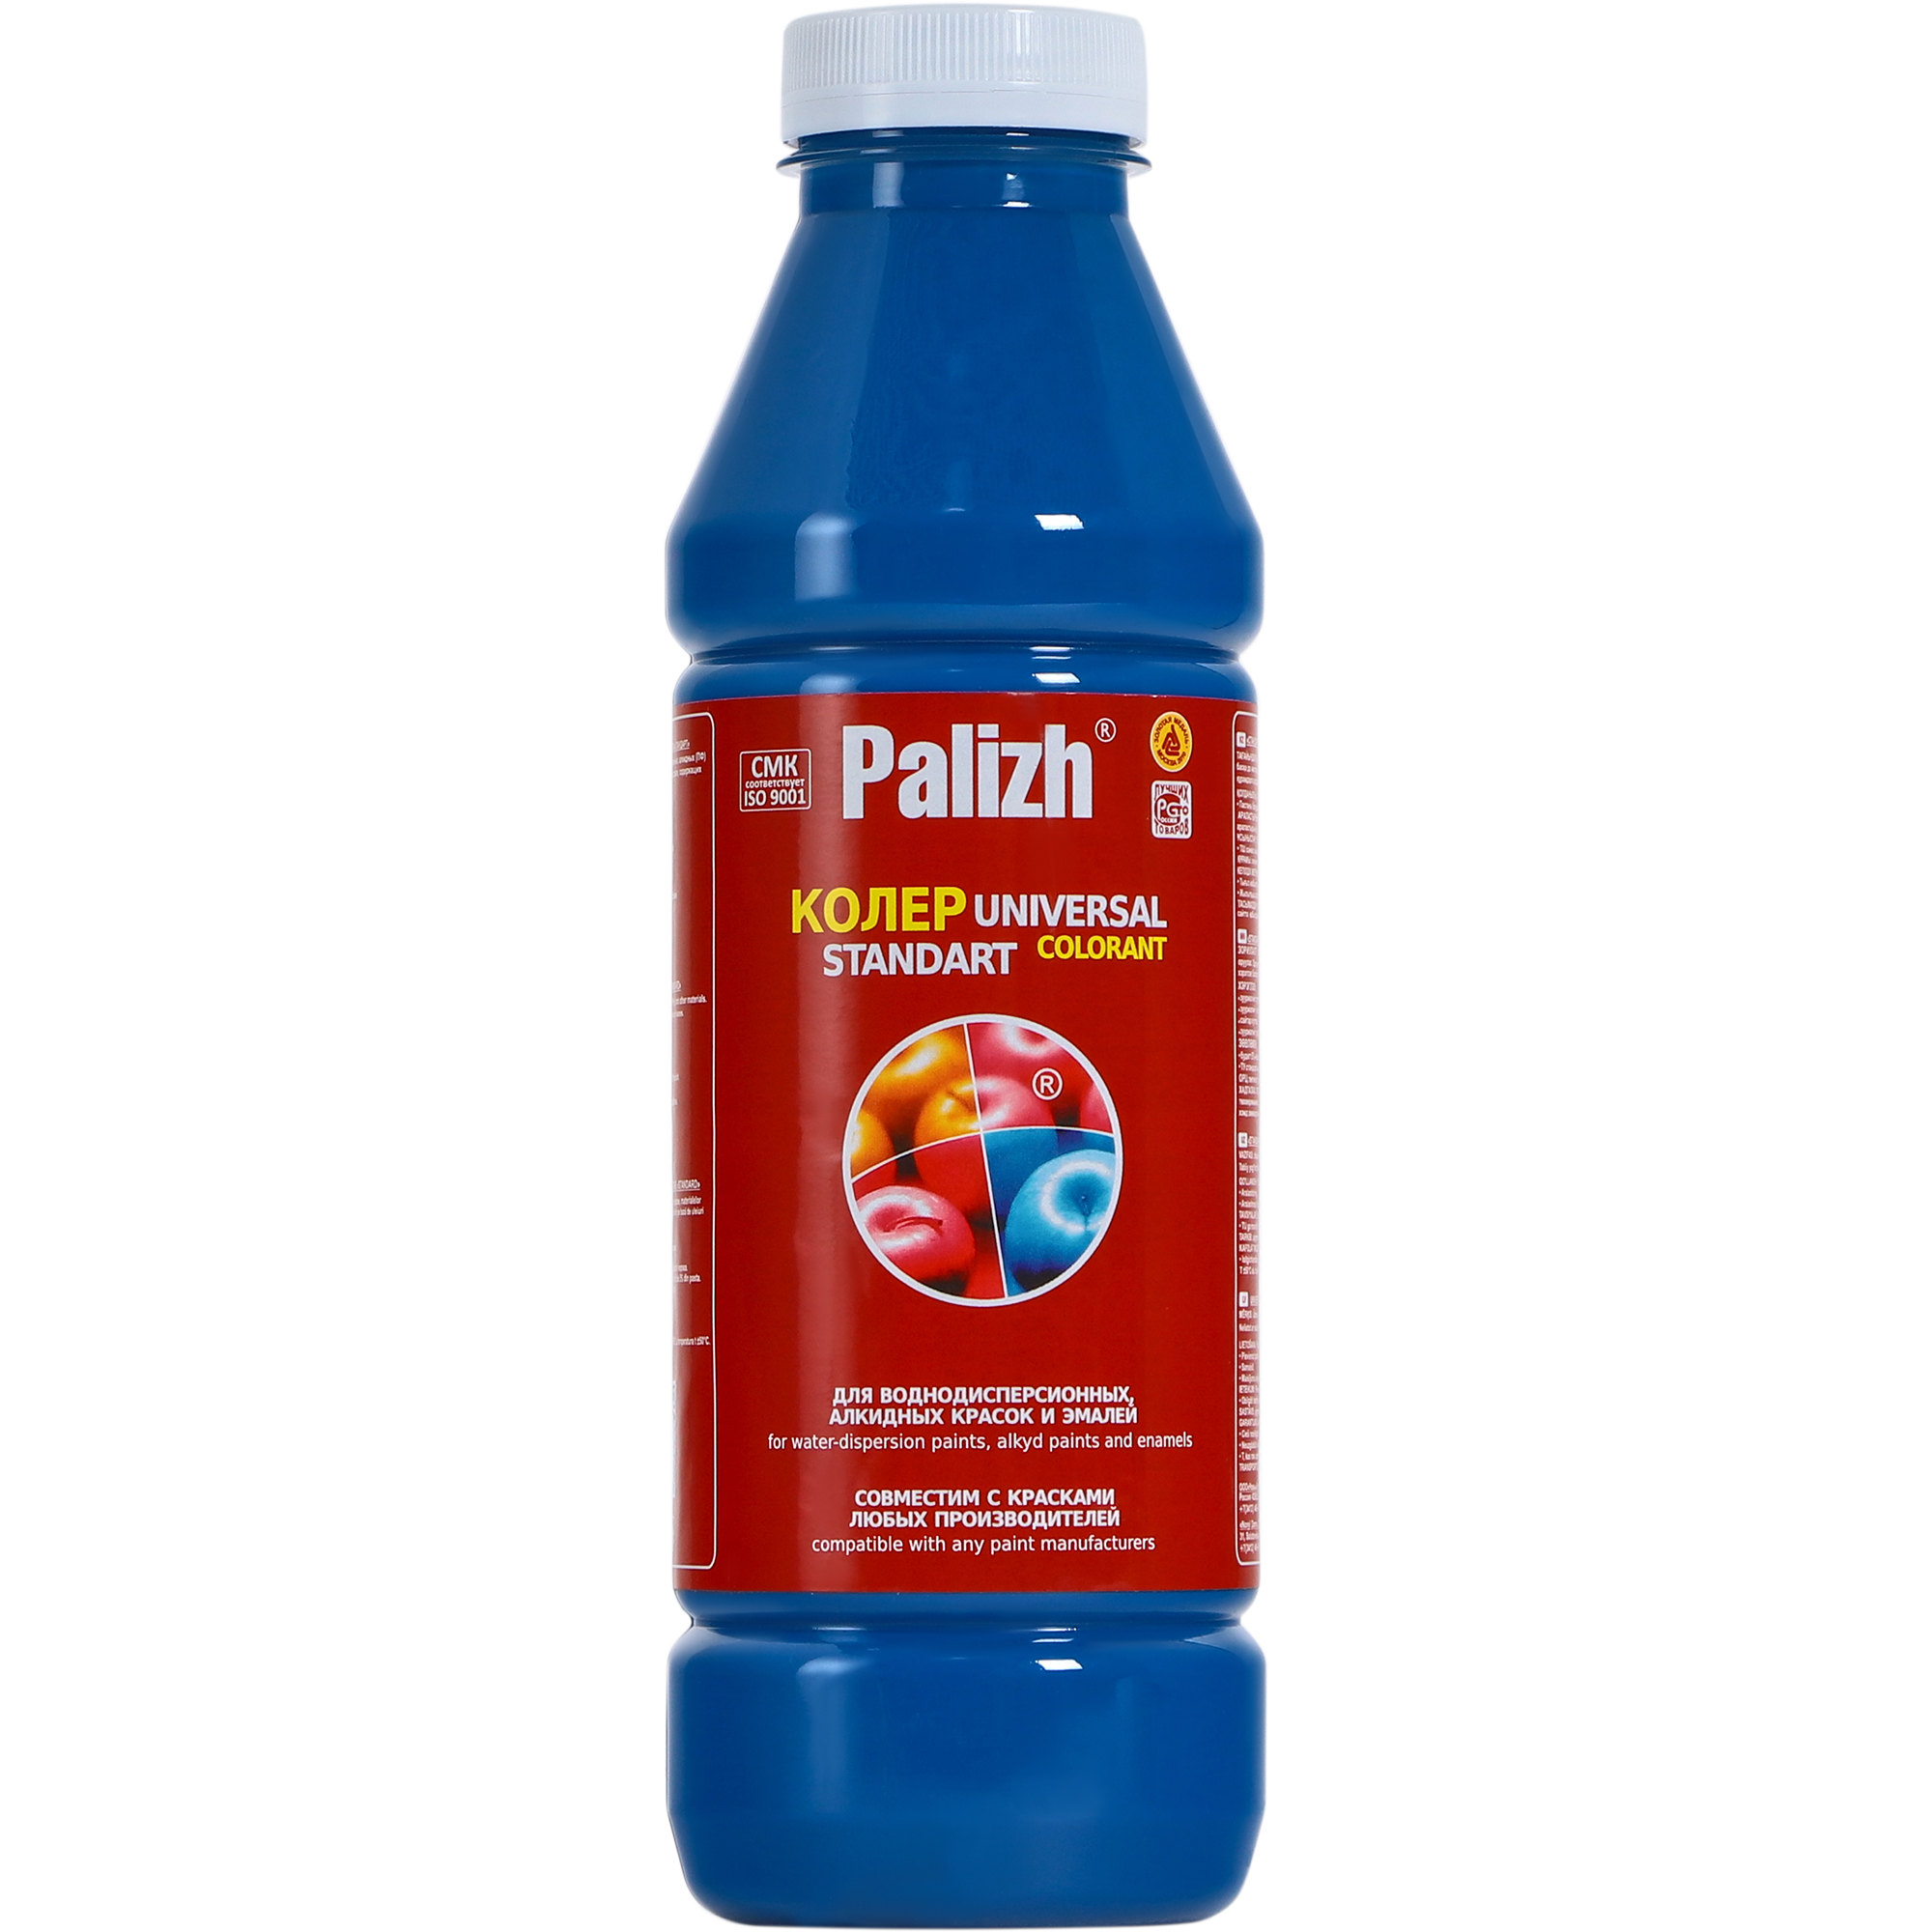 Паста универсальная колеровочная Palizh голубой - 900 мл паста универсальная колеровочная palizh пурпурный 100 мл